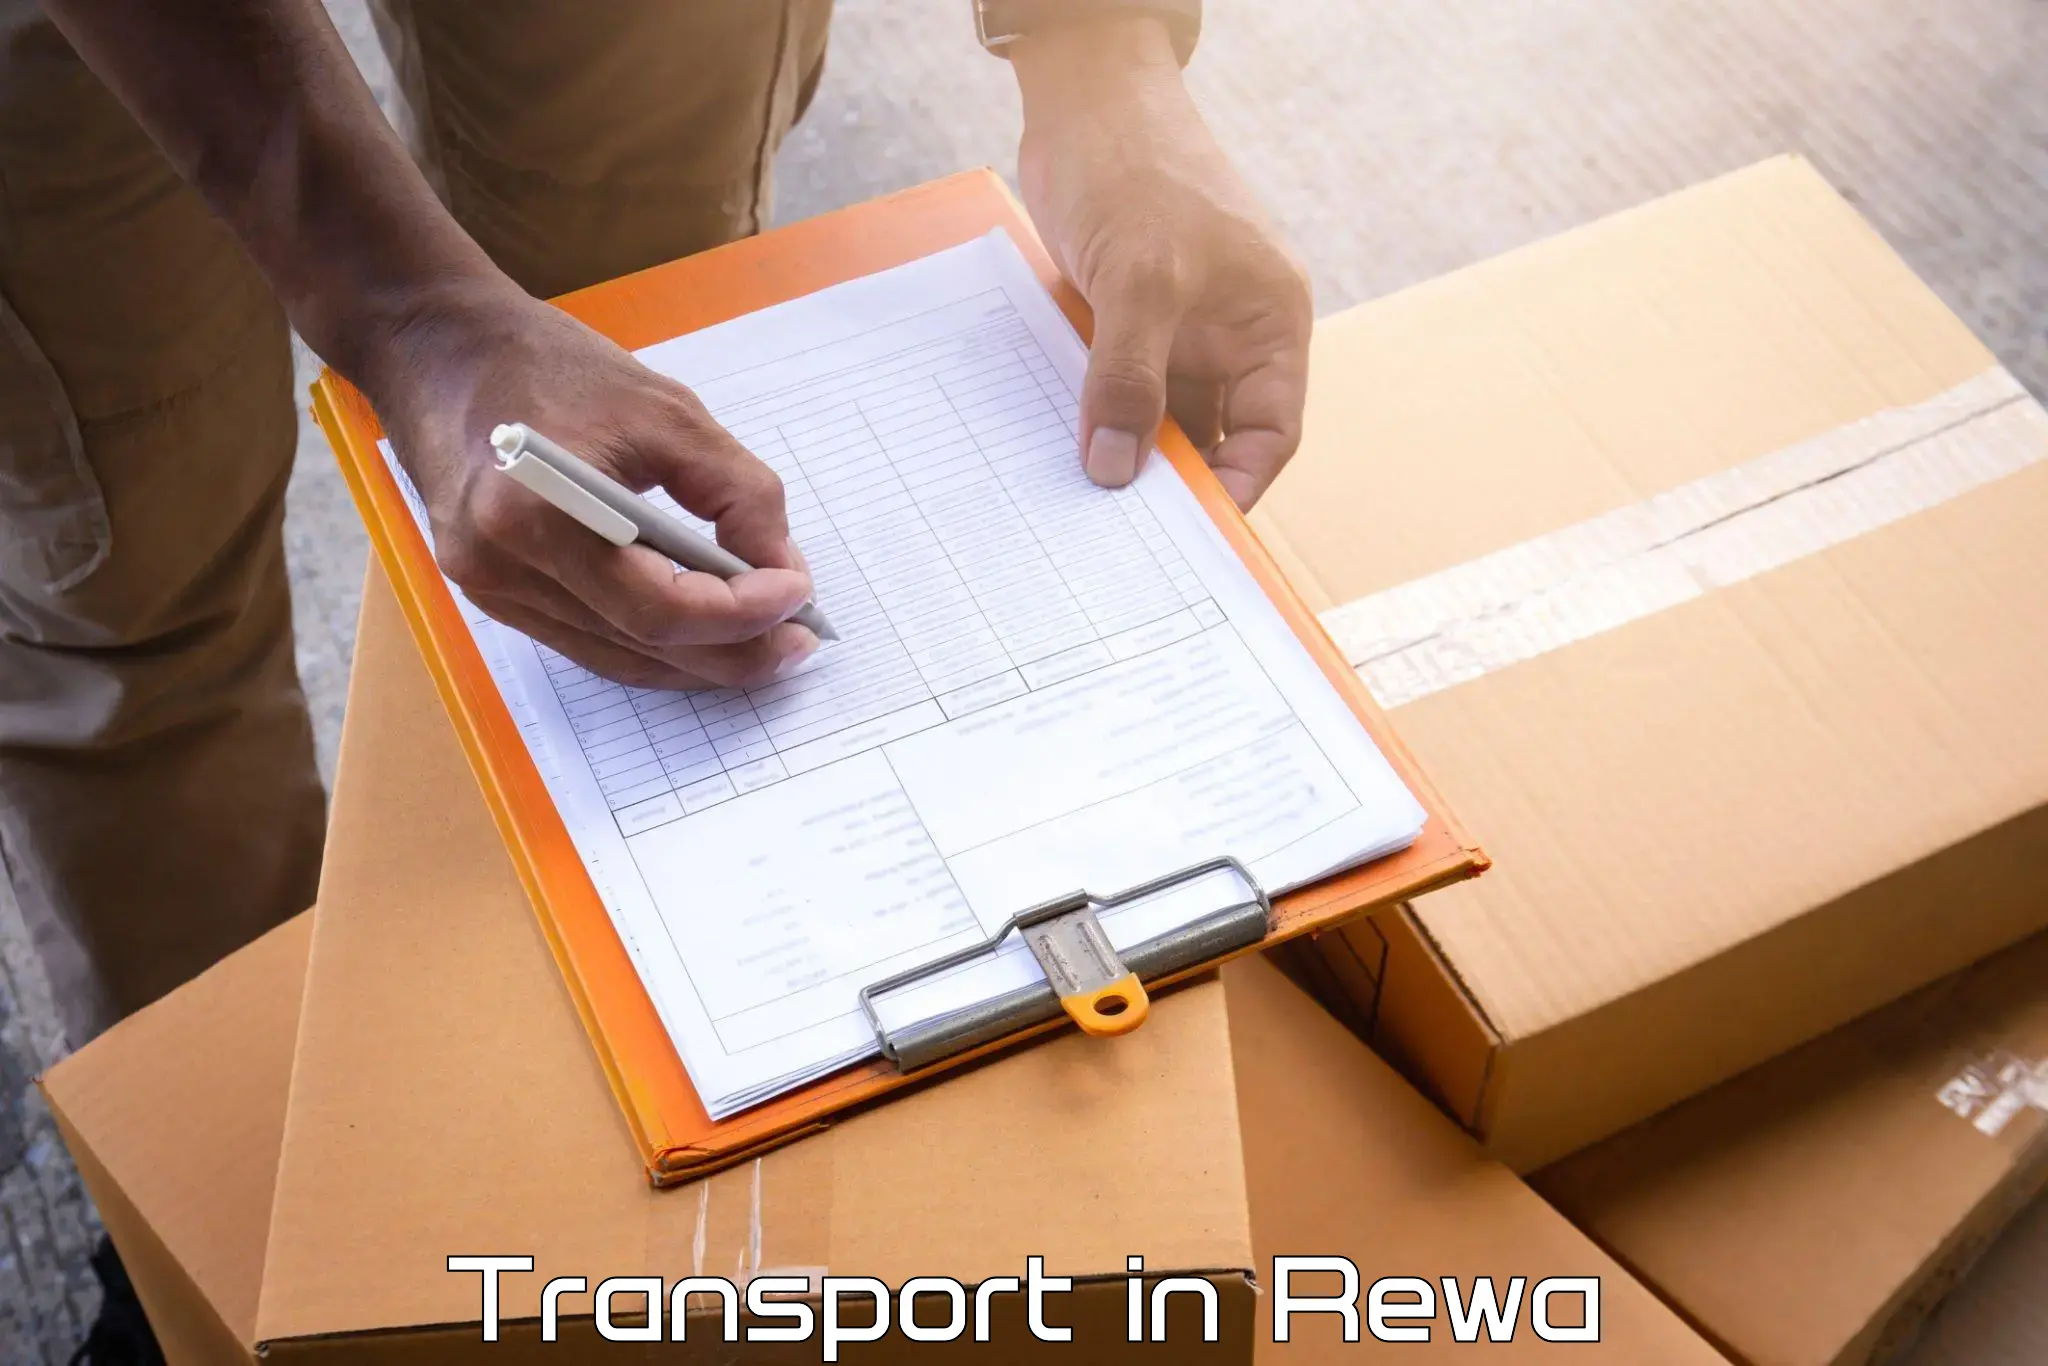 Interstate transport services in Rewa